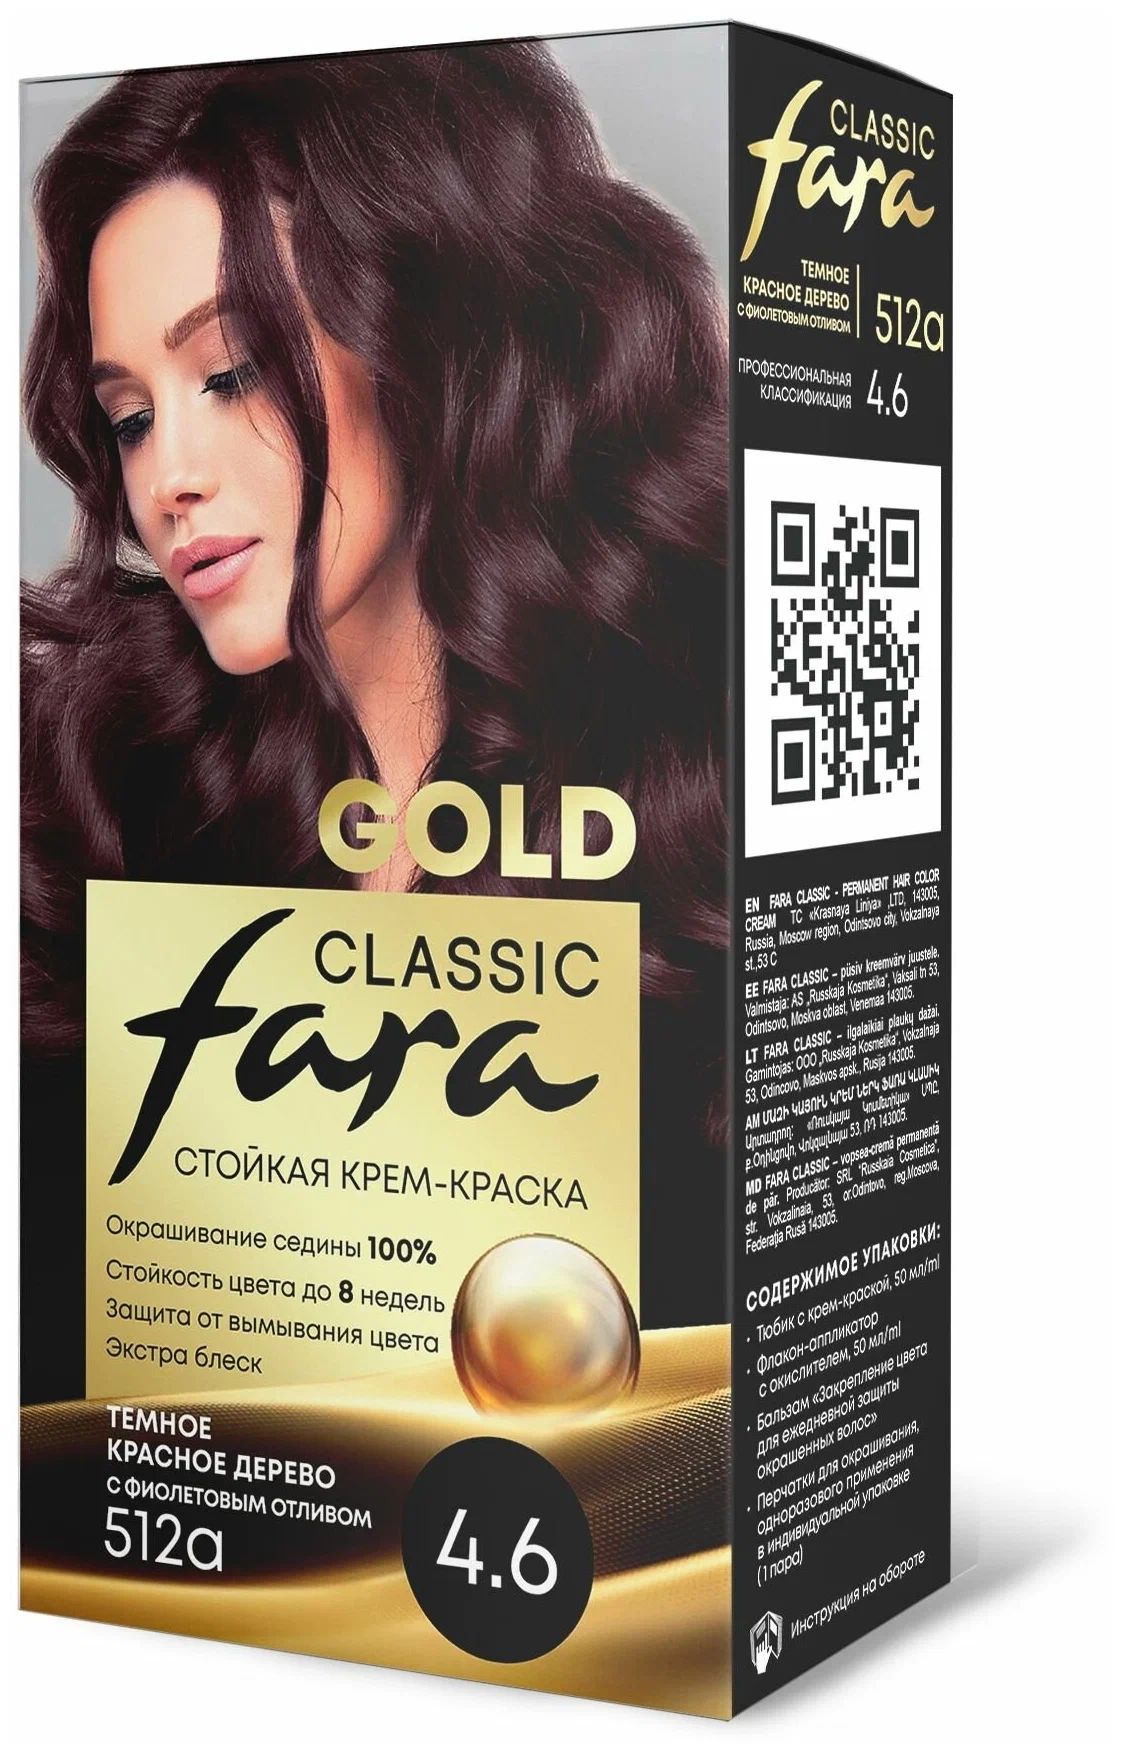 Крем-краска для волос Fara Classic Gold 512А красное дерево 4.6, 140 г младоформалисты русская проза